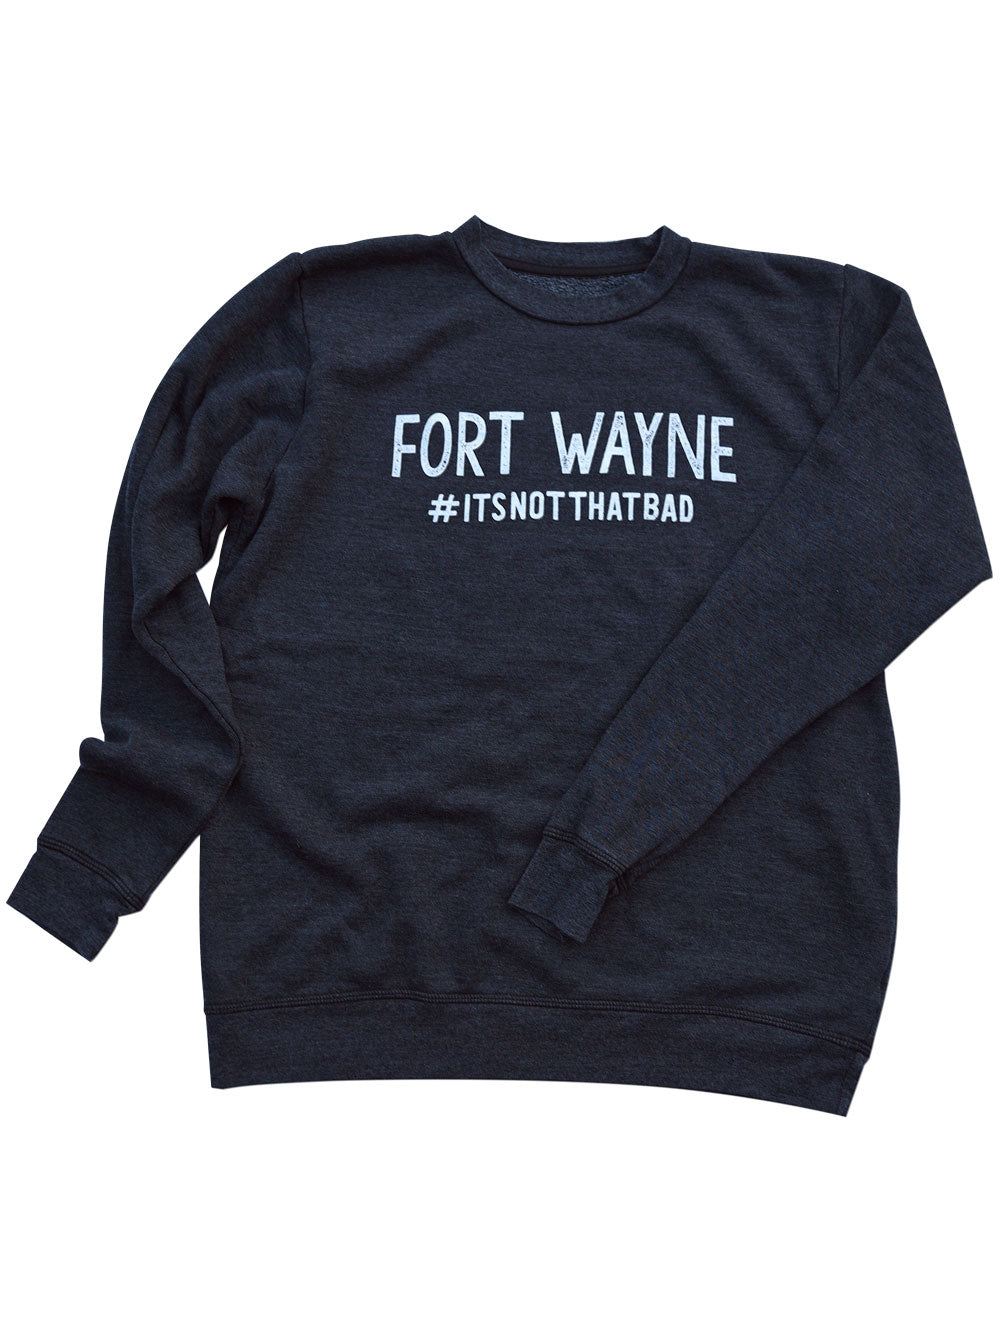 Fort Wayne #ItsNotThatBad Sweatshirt